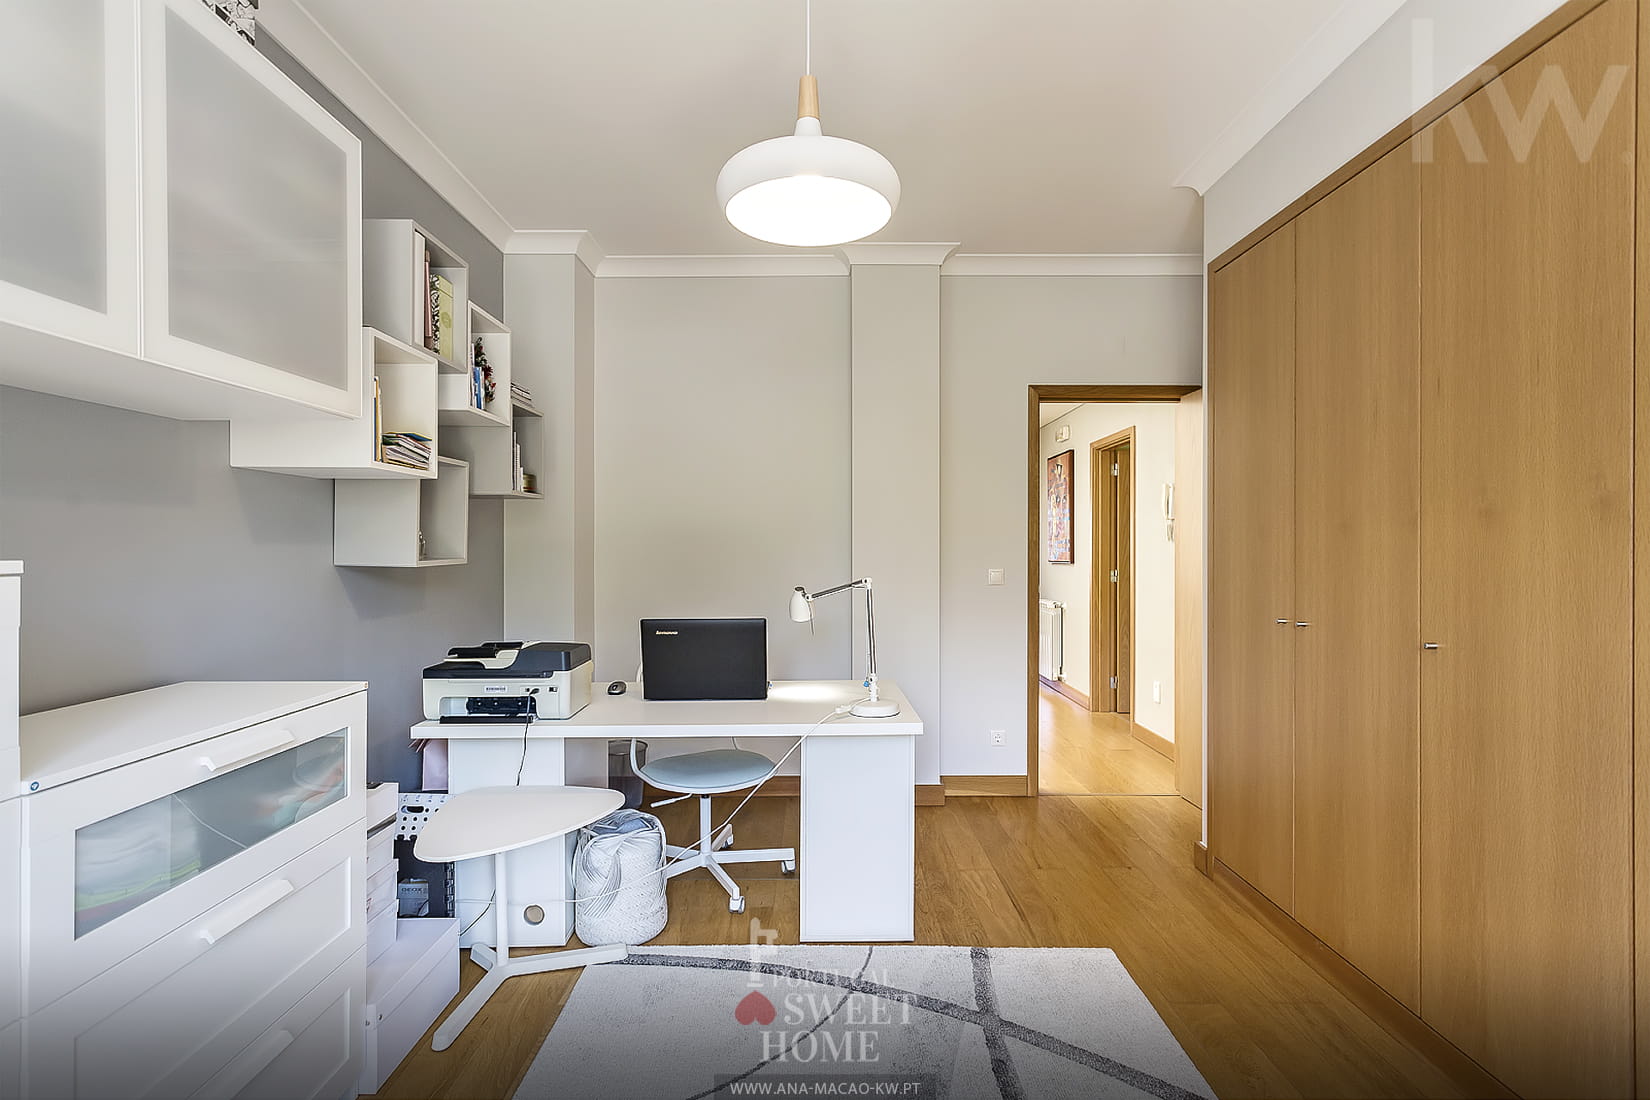 Bedroom / Office (14.45 m²)